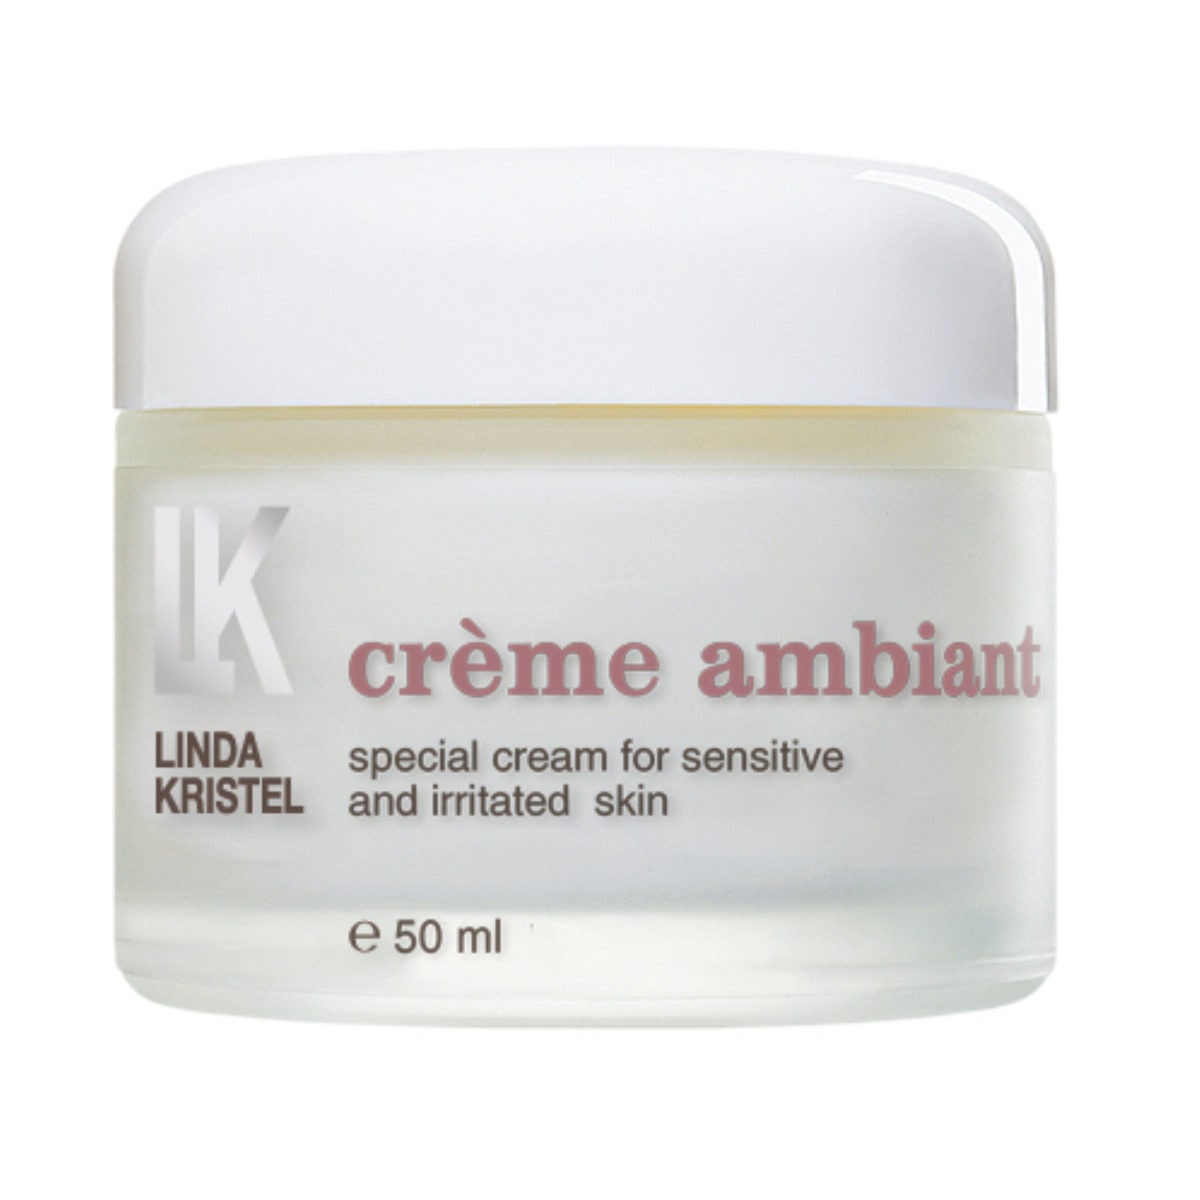 Крем для чувствительной кожи снимающий покраснения Crème Ambiant с экстрактом мимозы маслом ши и пантенолом 6090 руб....